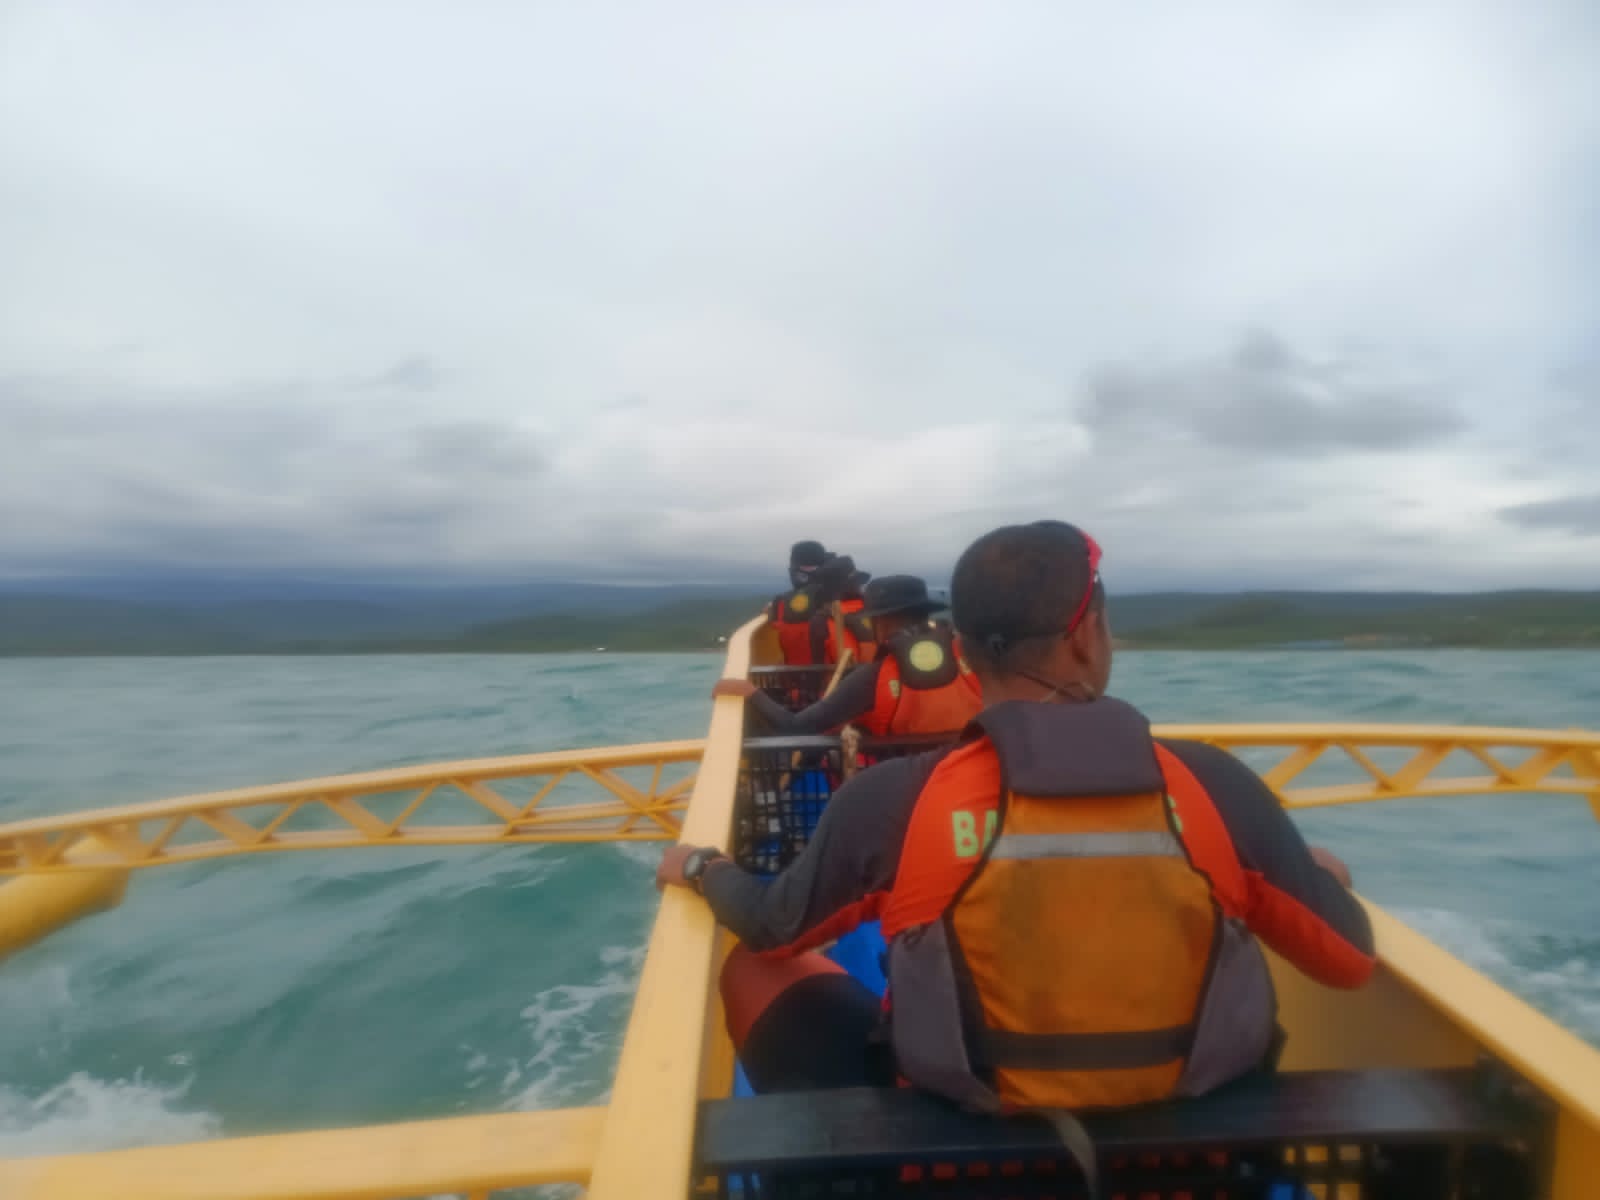 Sisir Perairan Labuhan Jukung, Pencarian Dua Nelayan Hilang Masih Nihil